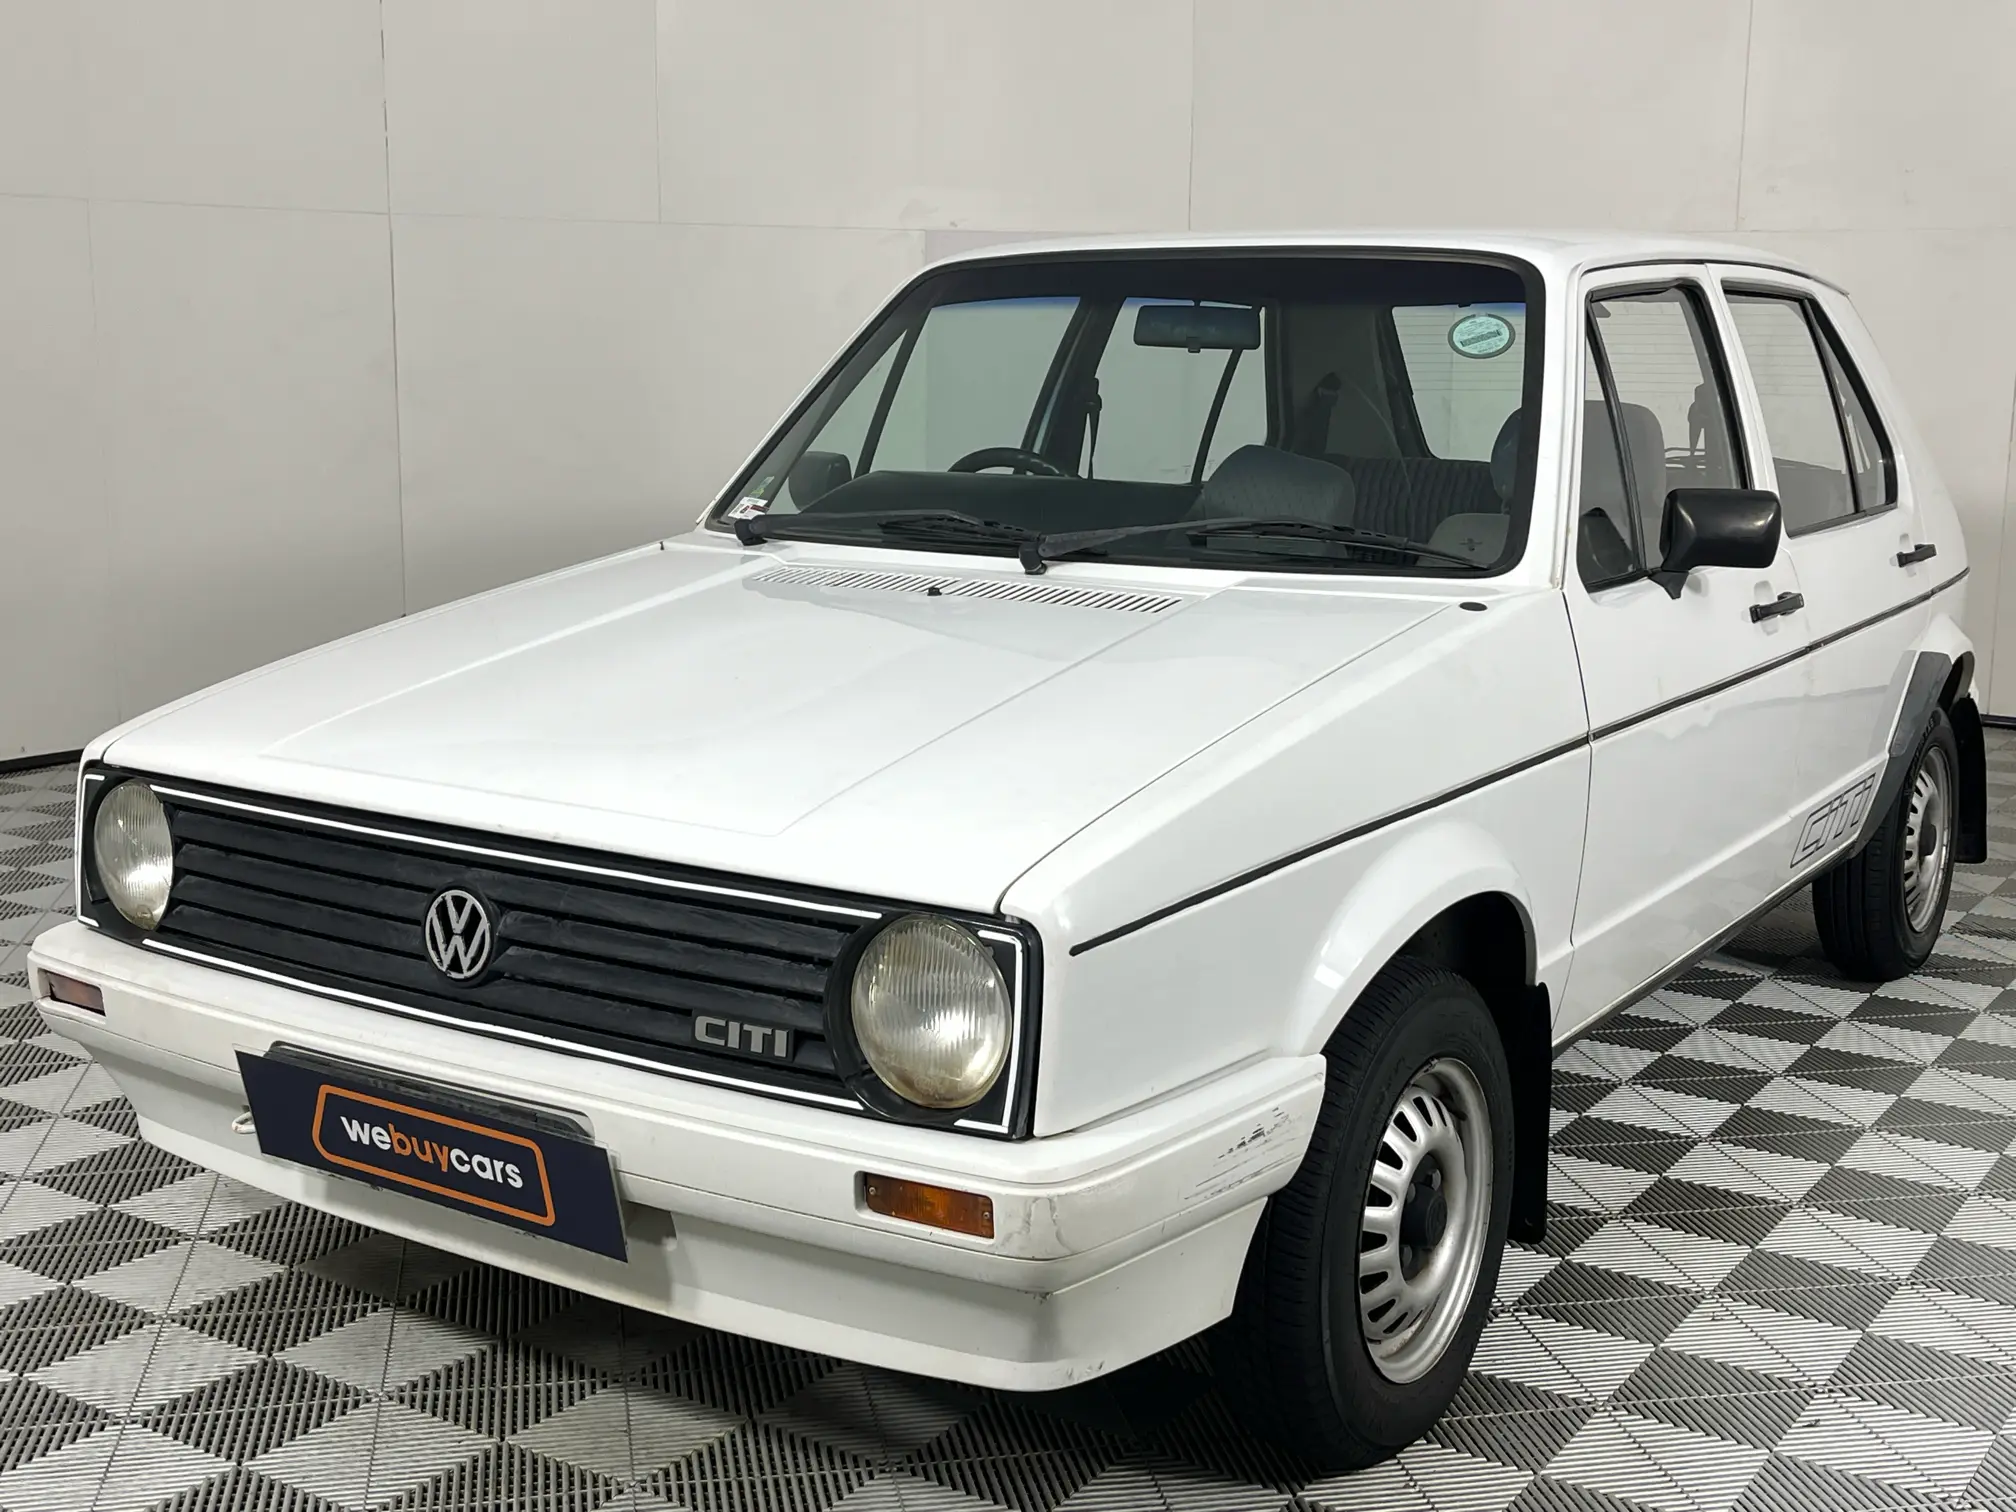 1995 Volkswagen Citi Chico